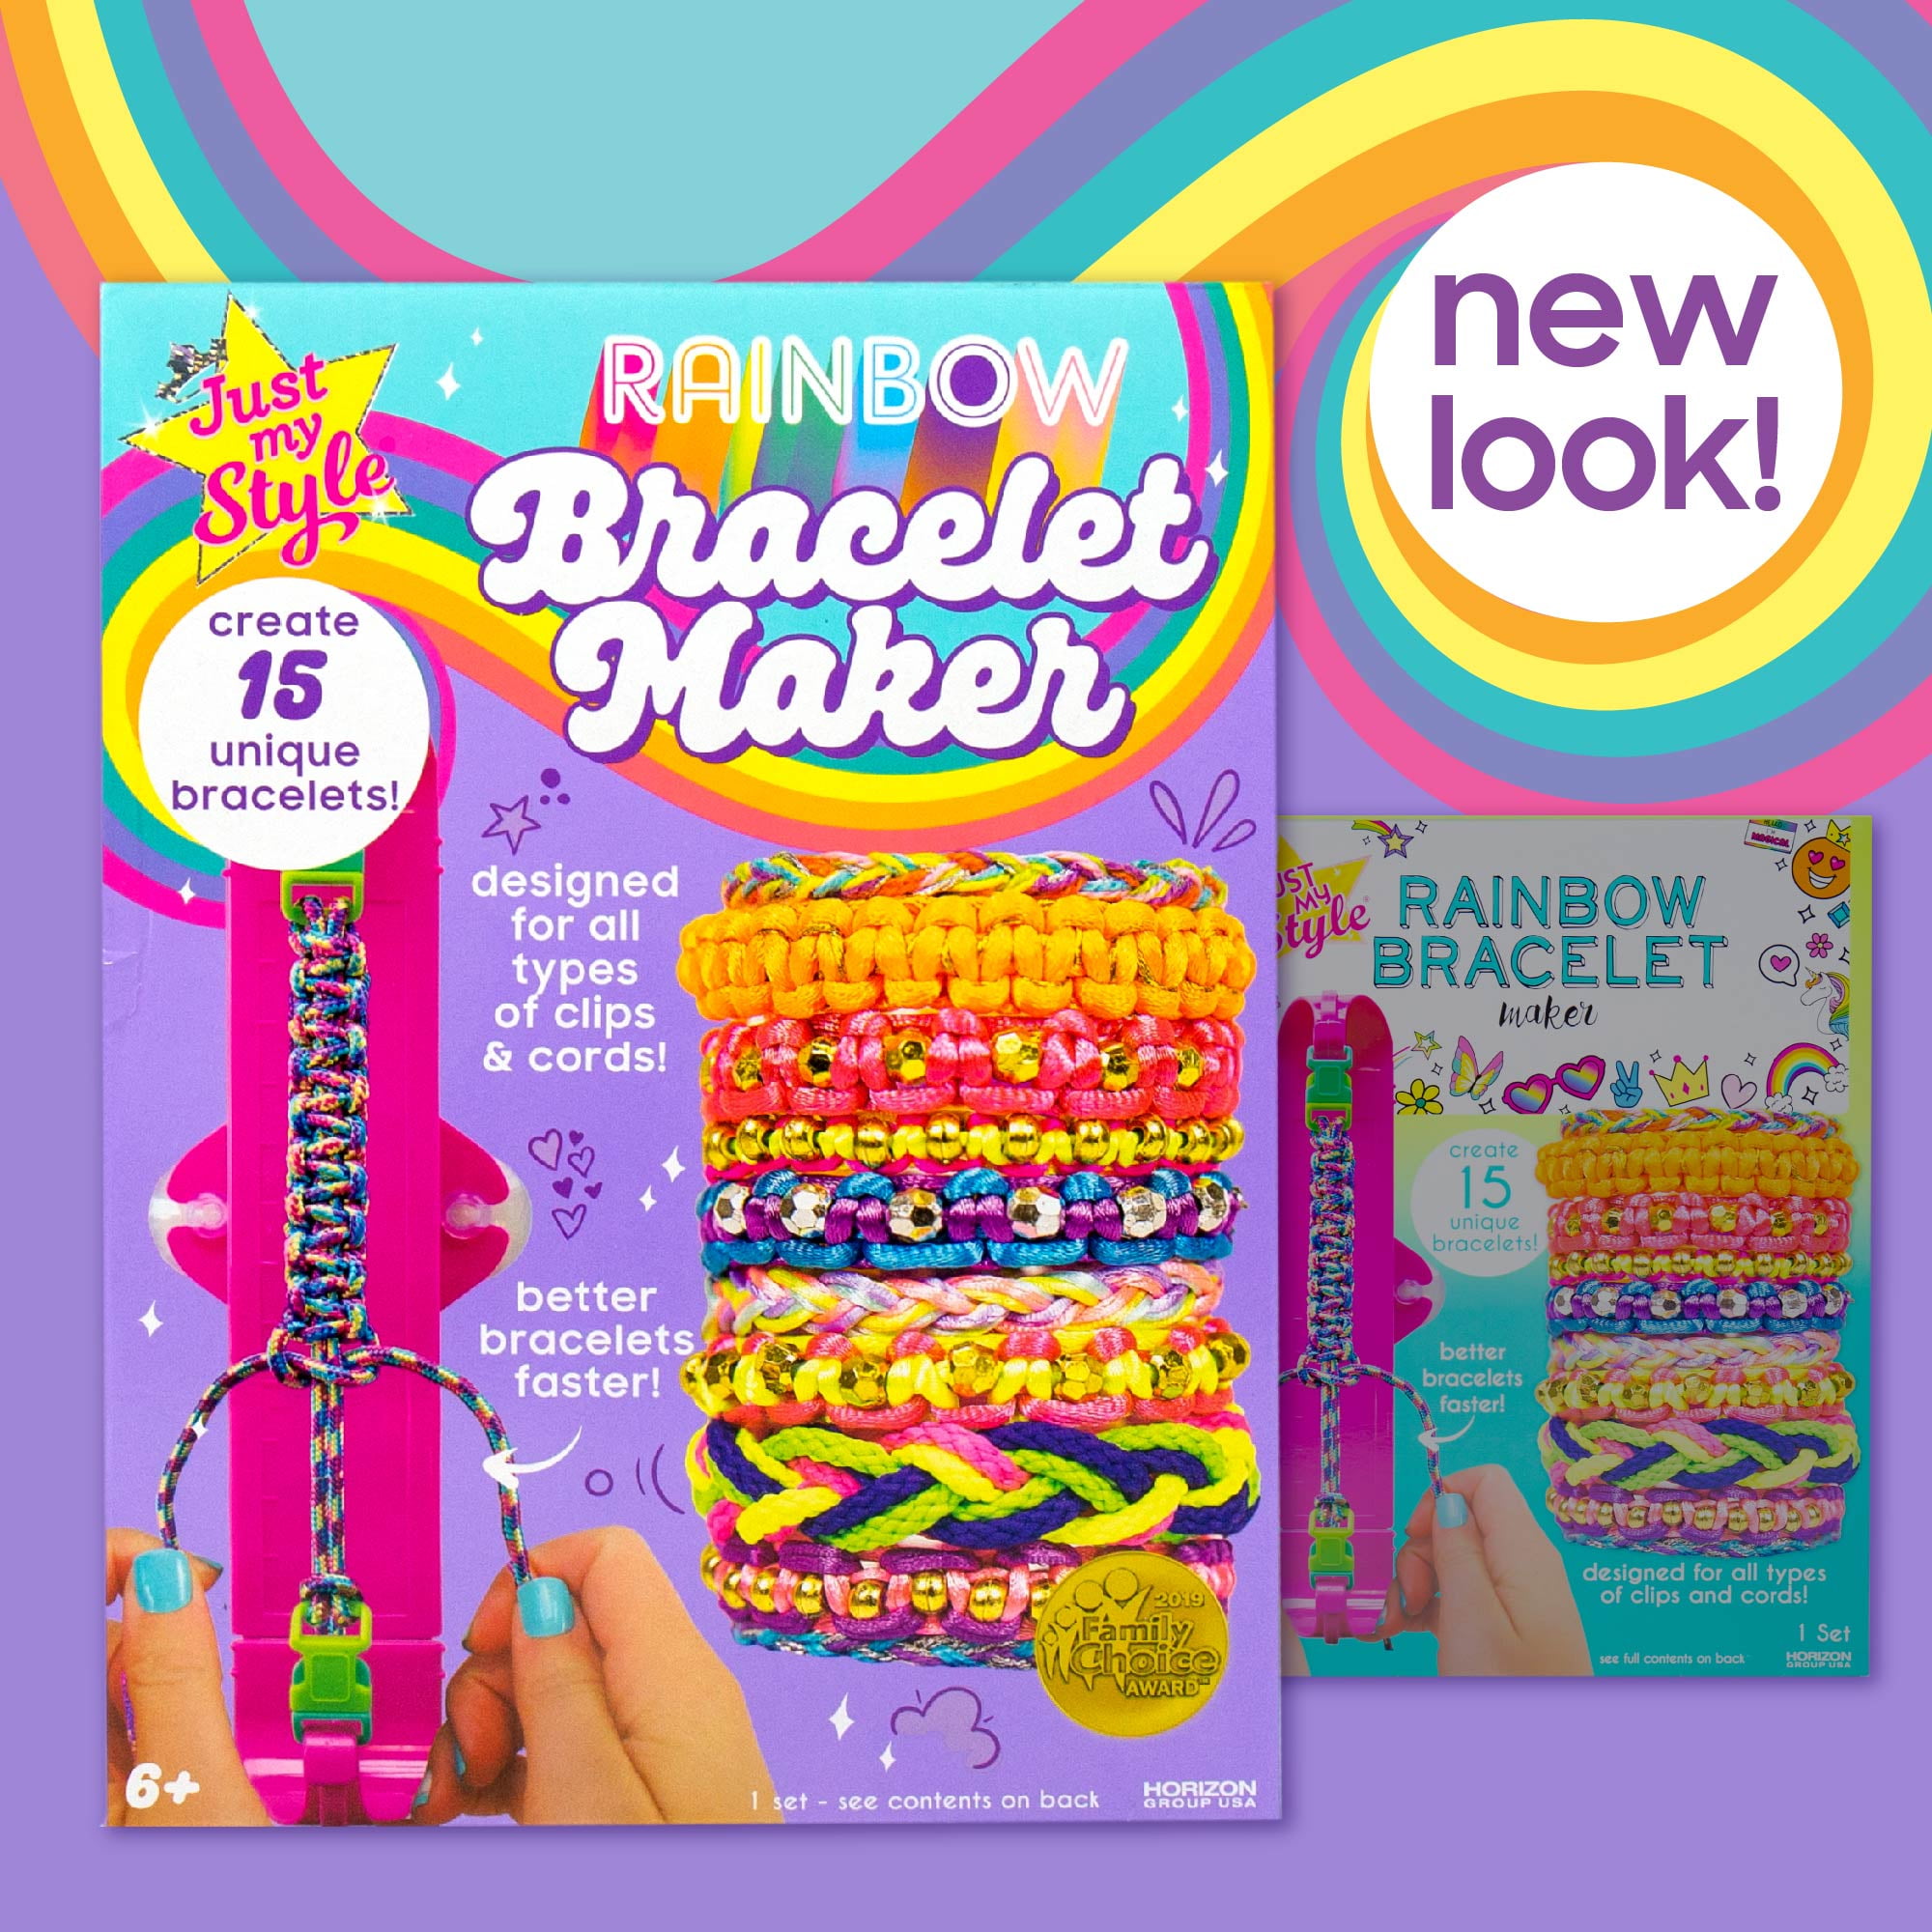 GenMe Rainbow Bracelet Maker